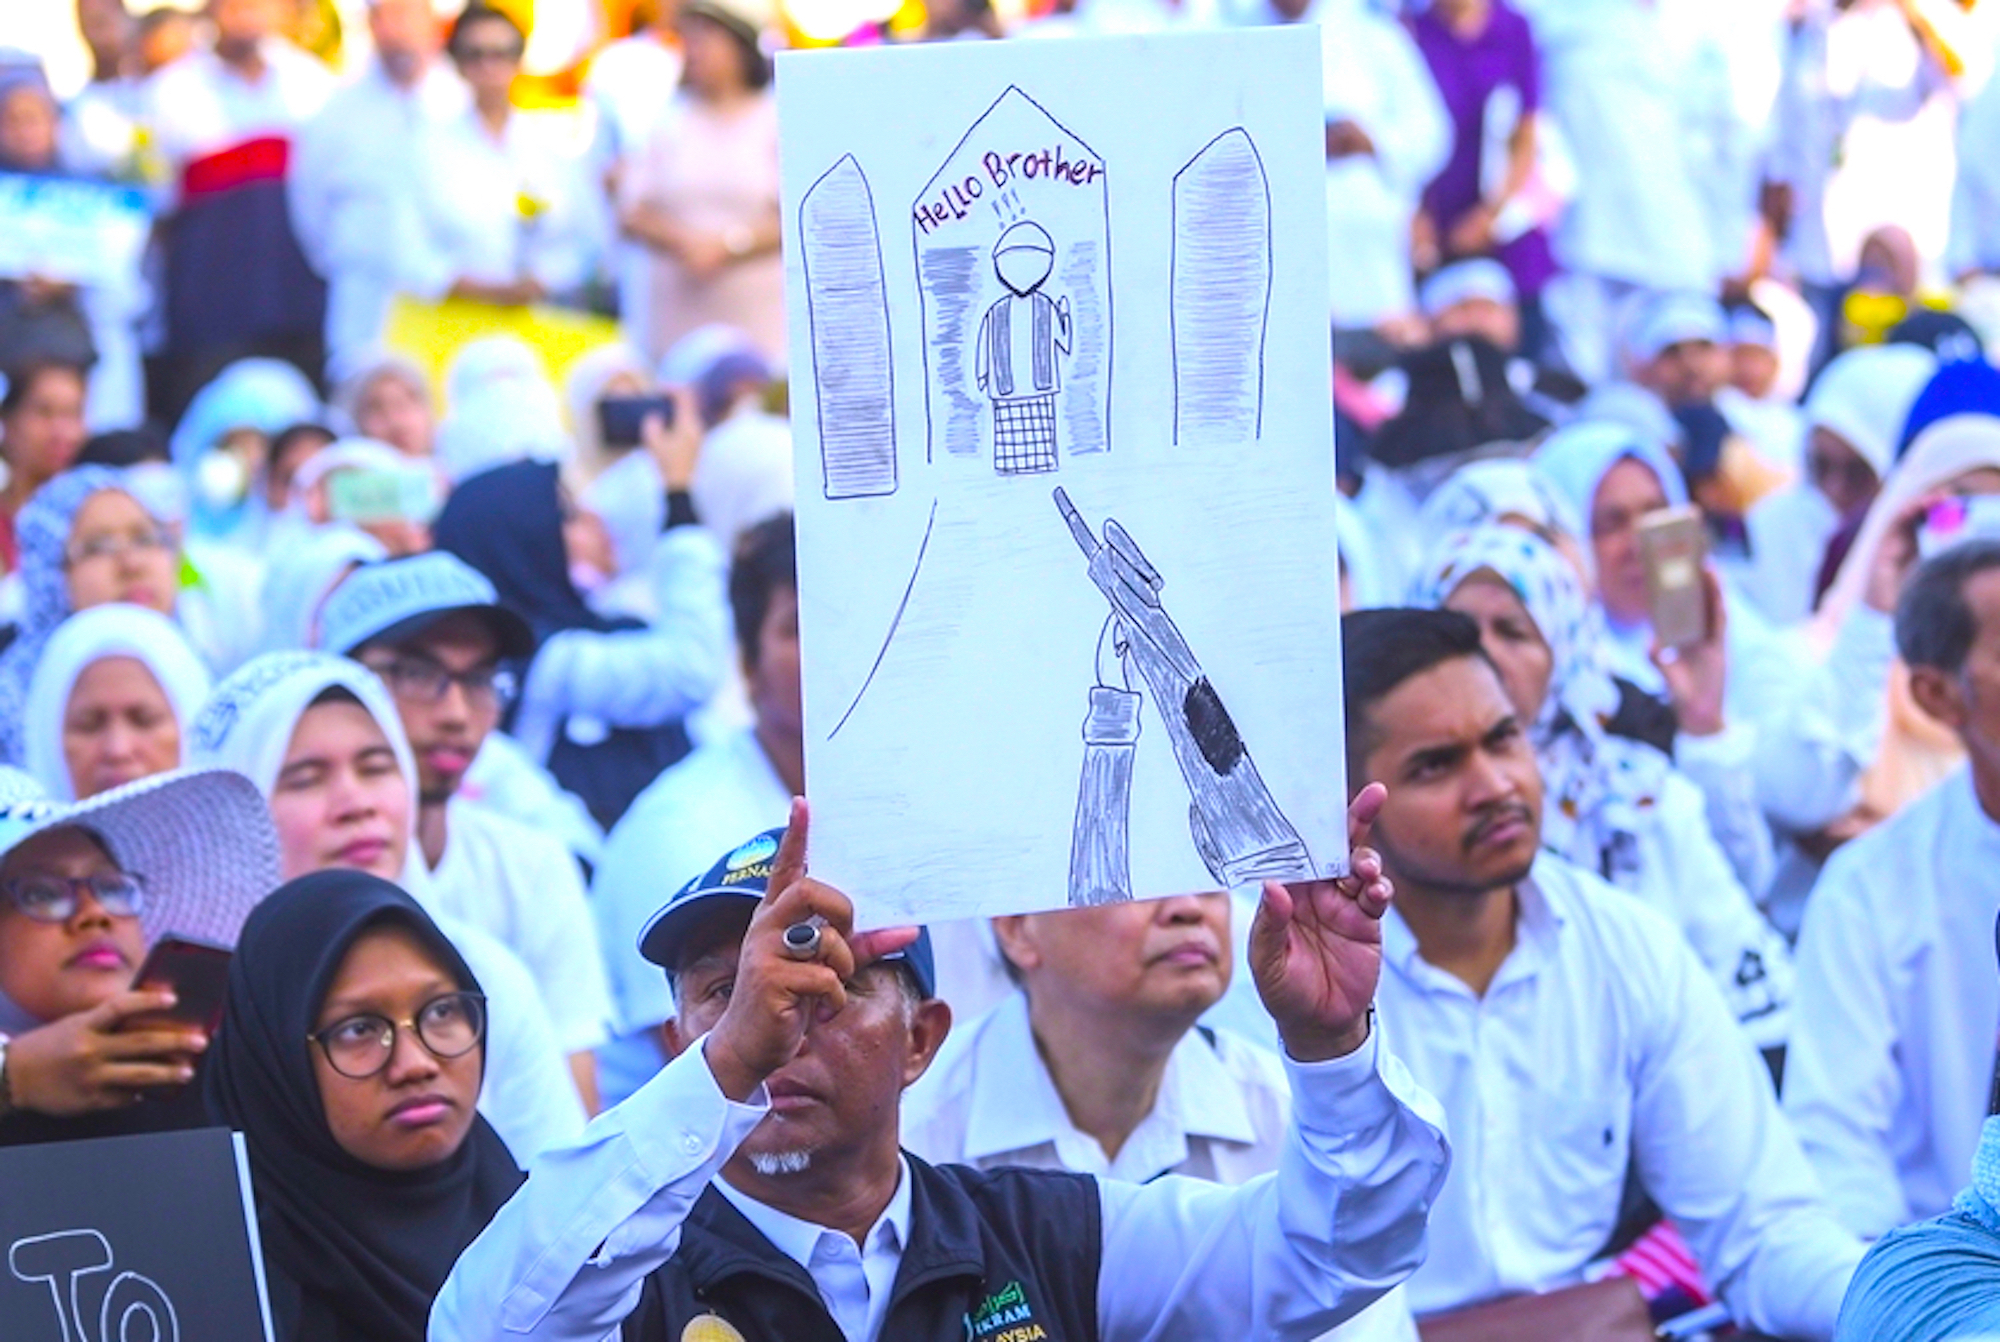 مجموعة من المتظاهرين يحملون رسم للمقولة الشهيرة في مجزرة نيوزيلندا ”مرحبا أخي“